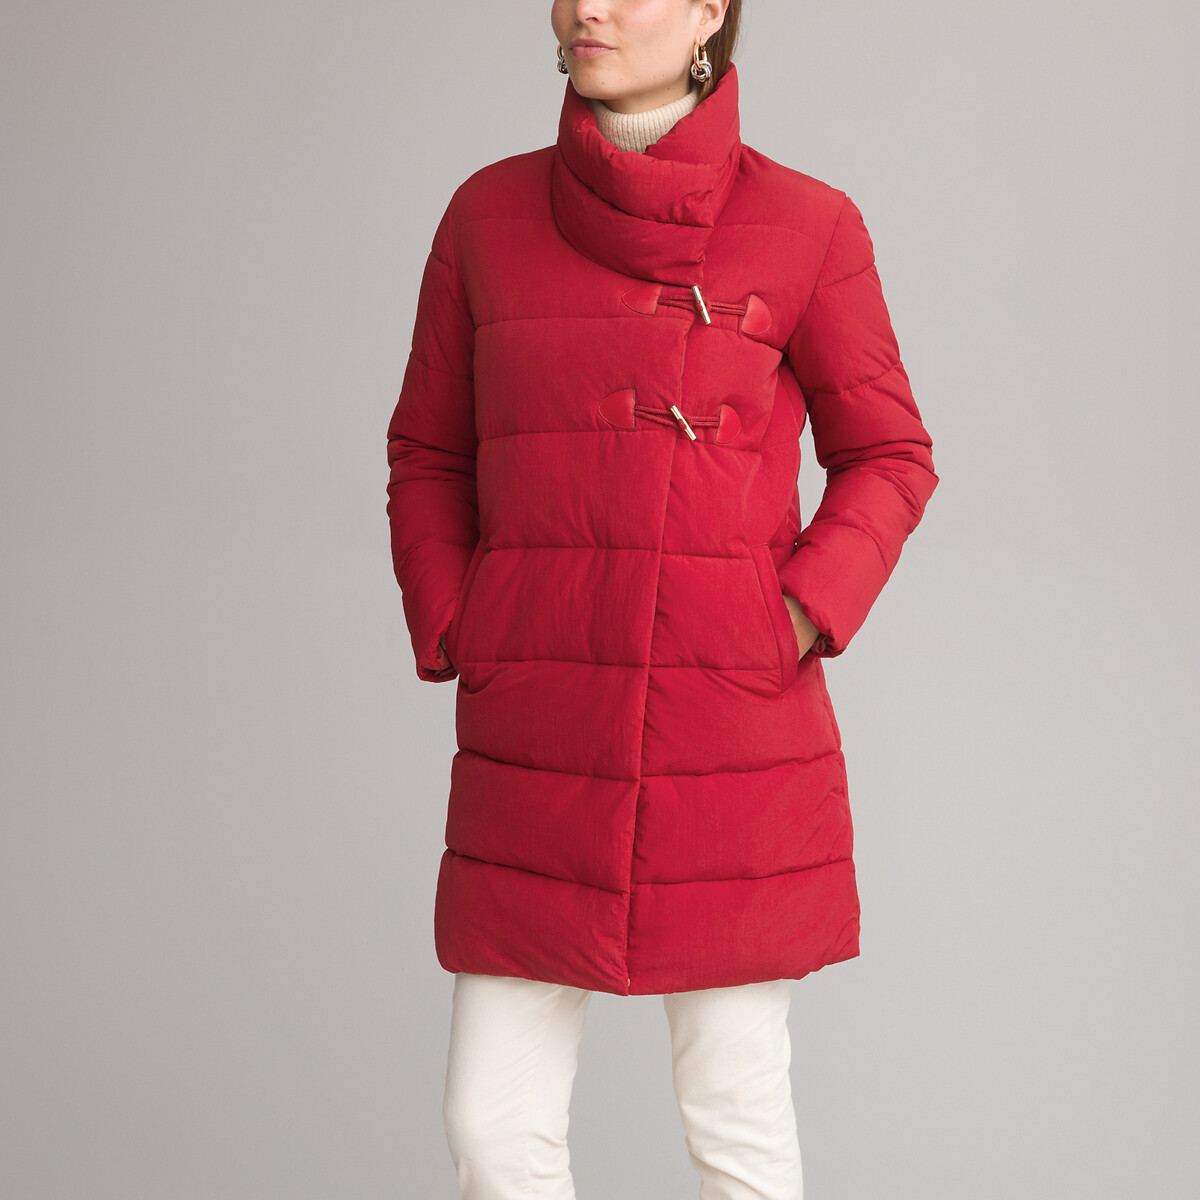 Куртка стеганая средней длины застежка на молнию зимняя модель 38 (FR) - 44 (RUS) красный джинсы узкие 78 застежка на молнию на щиколотке 38 fr 44 rus розовый